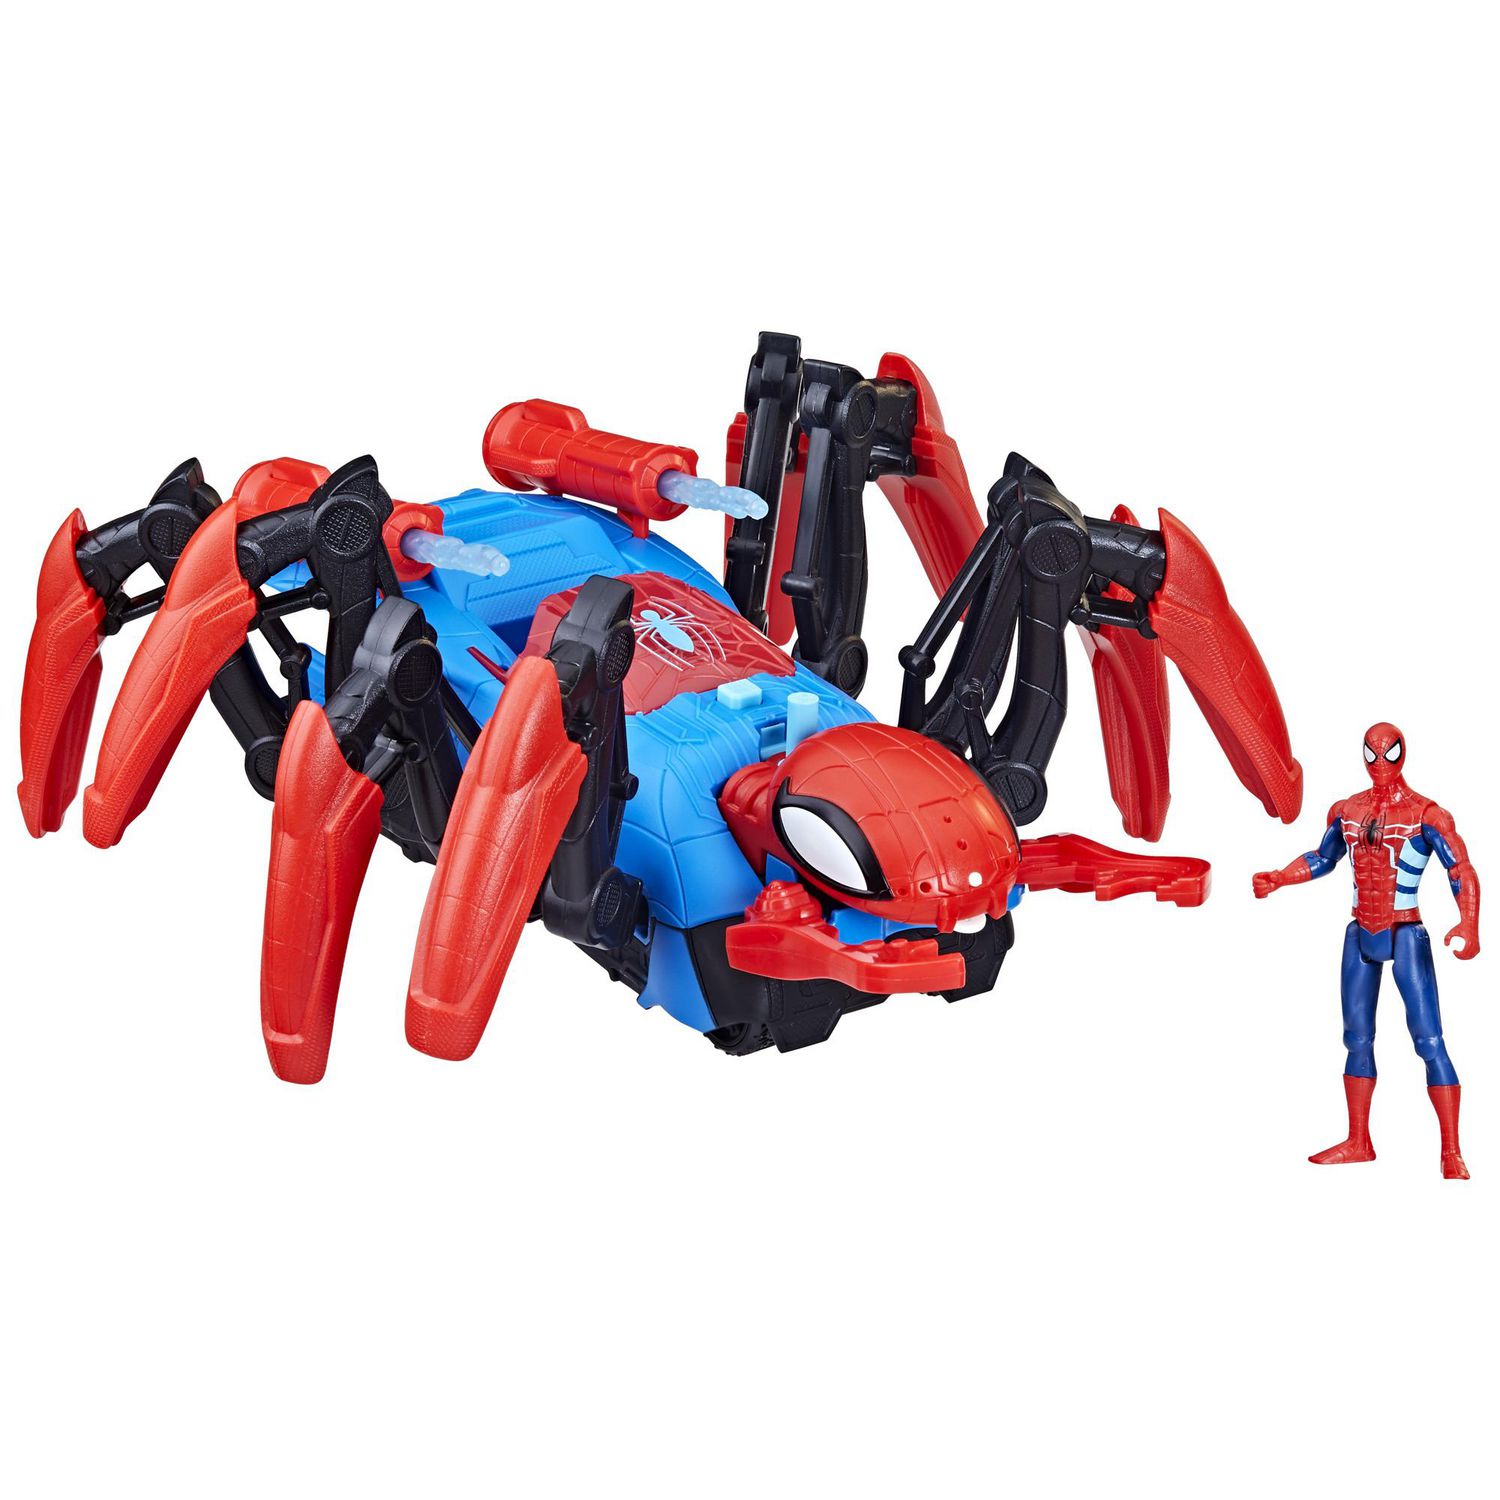 Marvel Spider-Man Crawl 'N Blast Spider, Car Playset with Spider